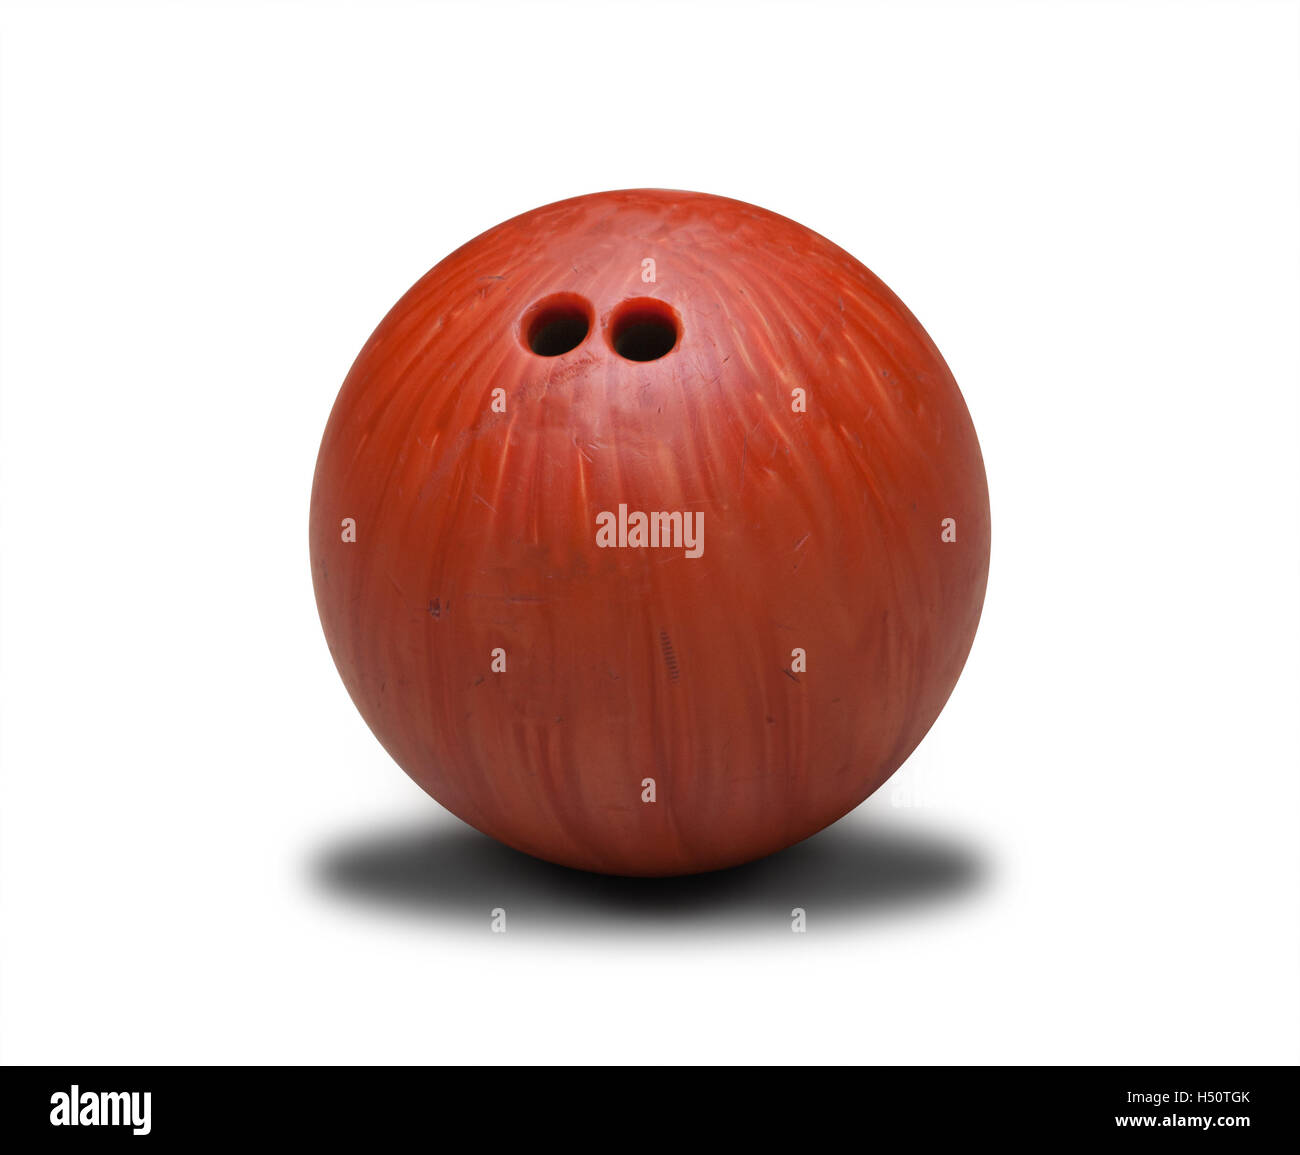 Orange bowling ball isolated on white background. Stock Photo